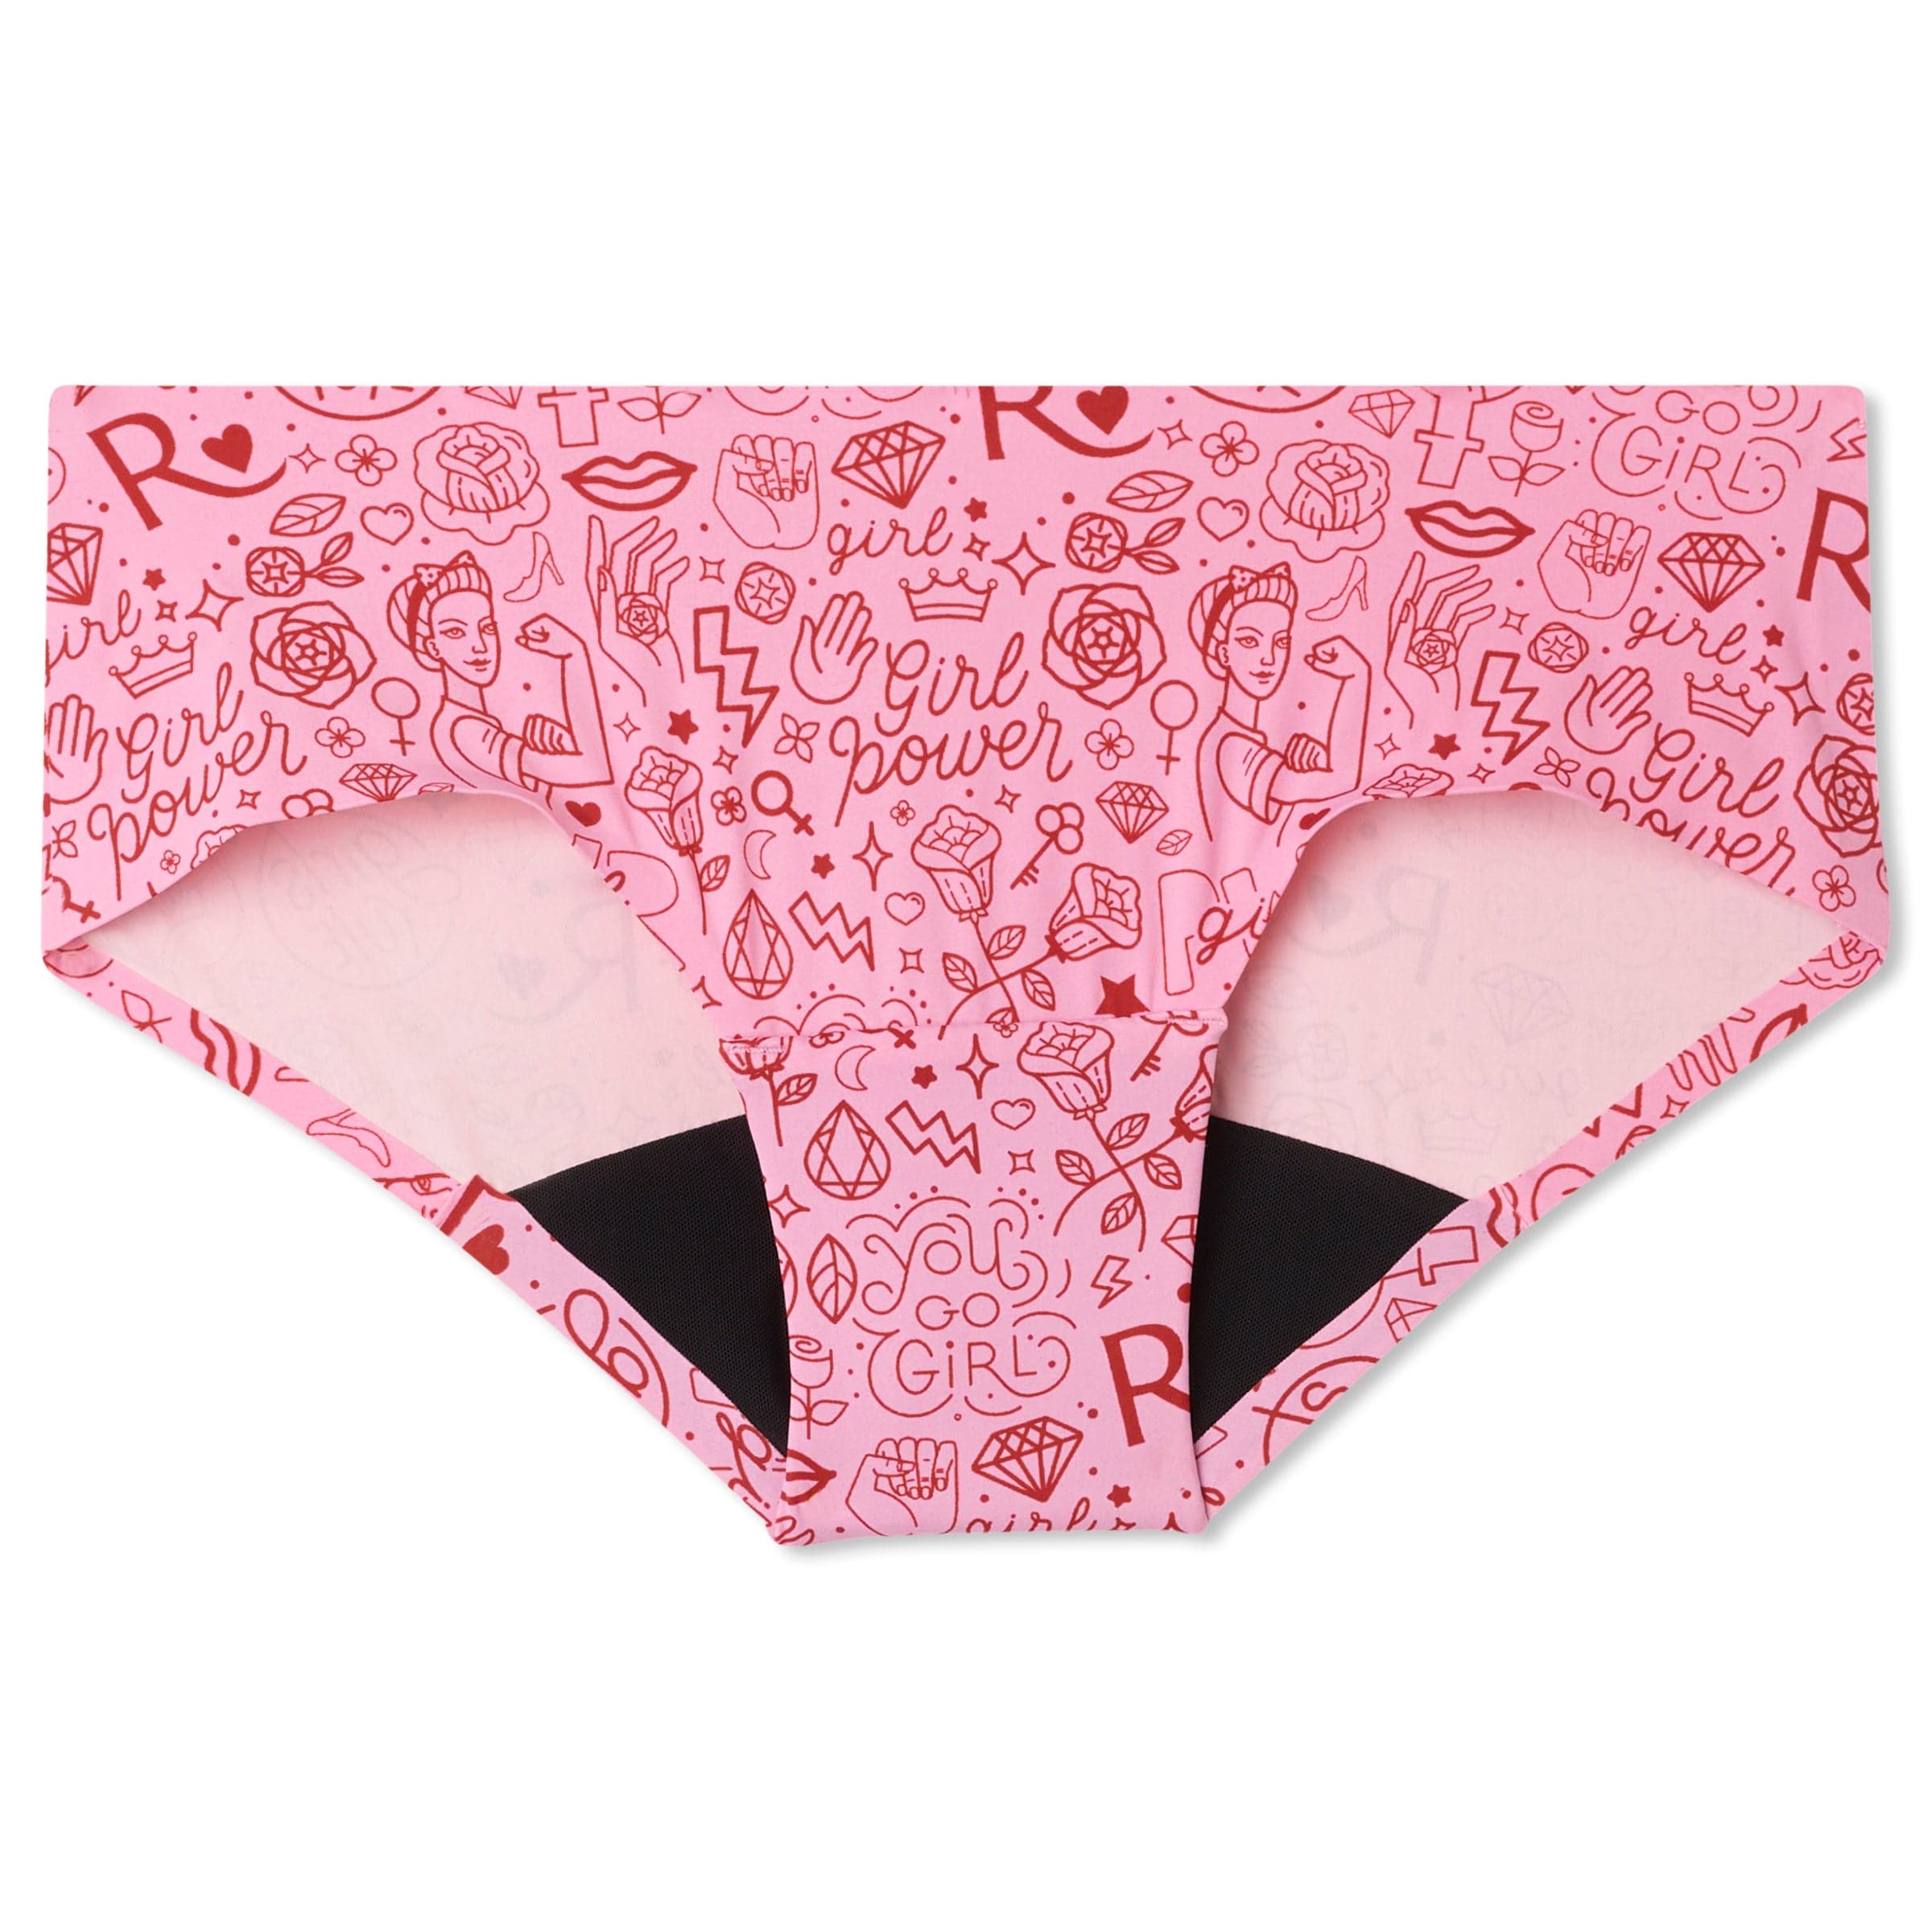 Buy Hipster Period Underwear - Order Panties online 1120593500